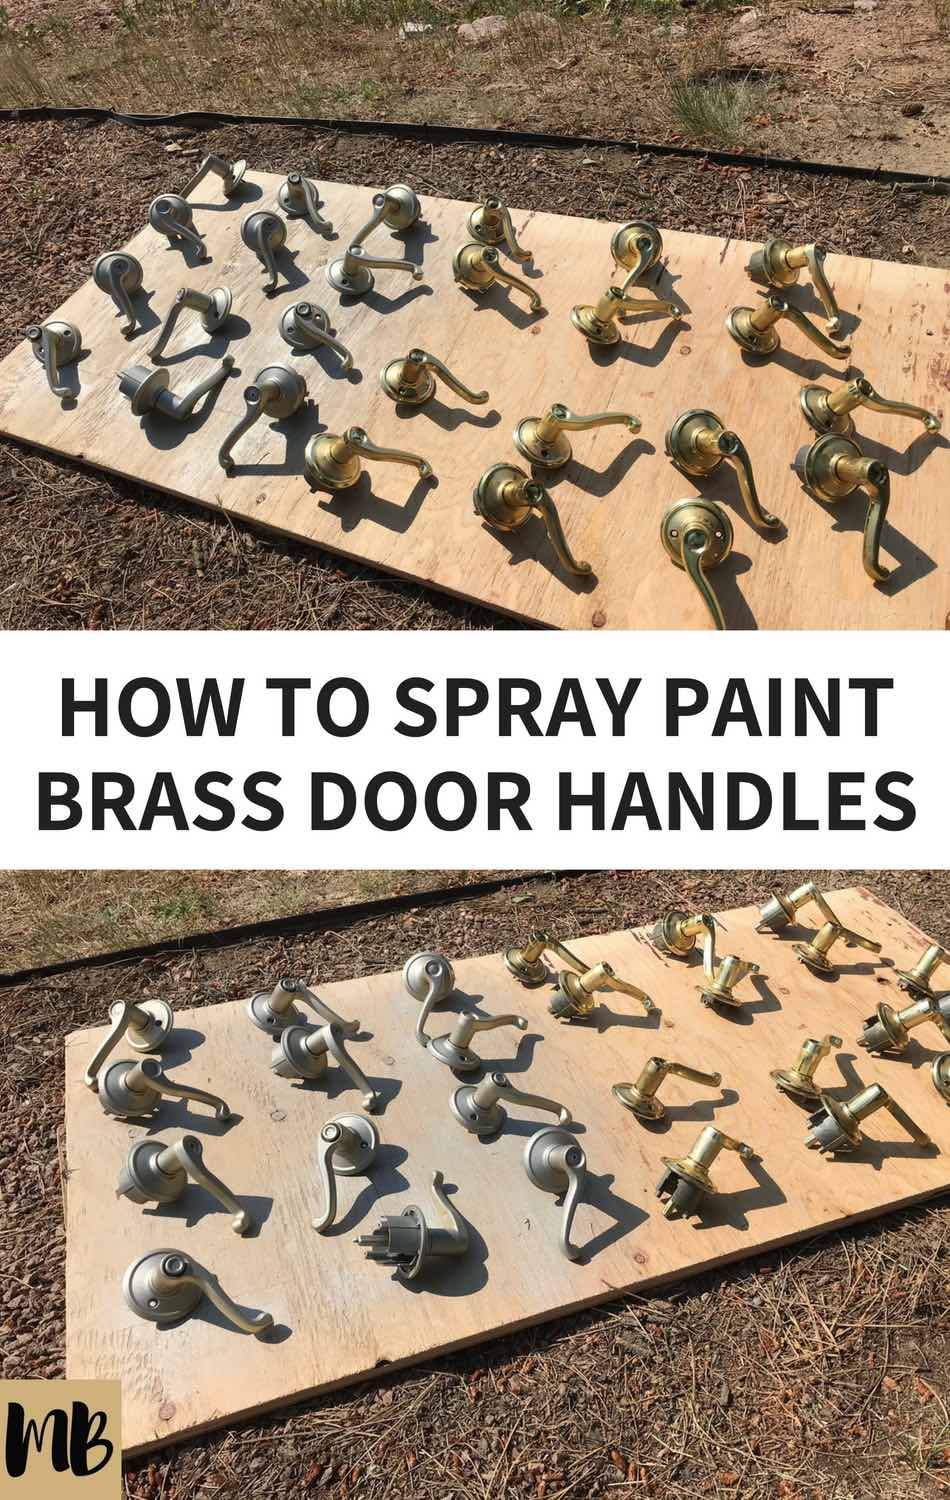 How to spray paint brass door handles